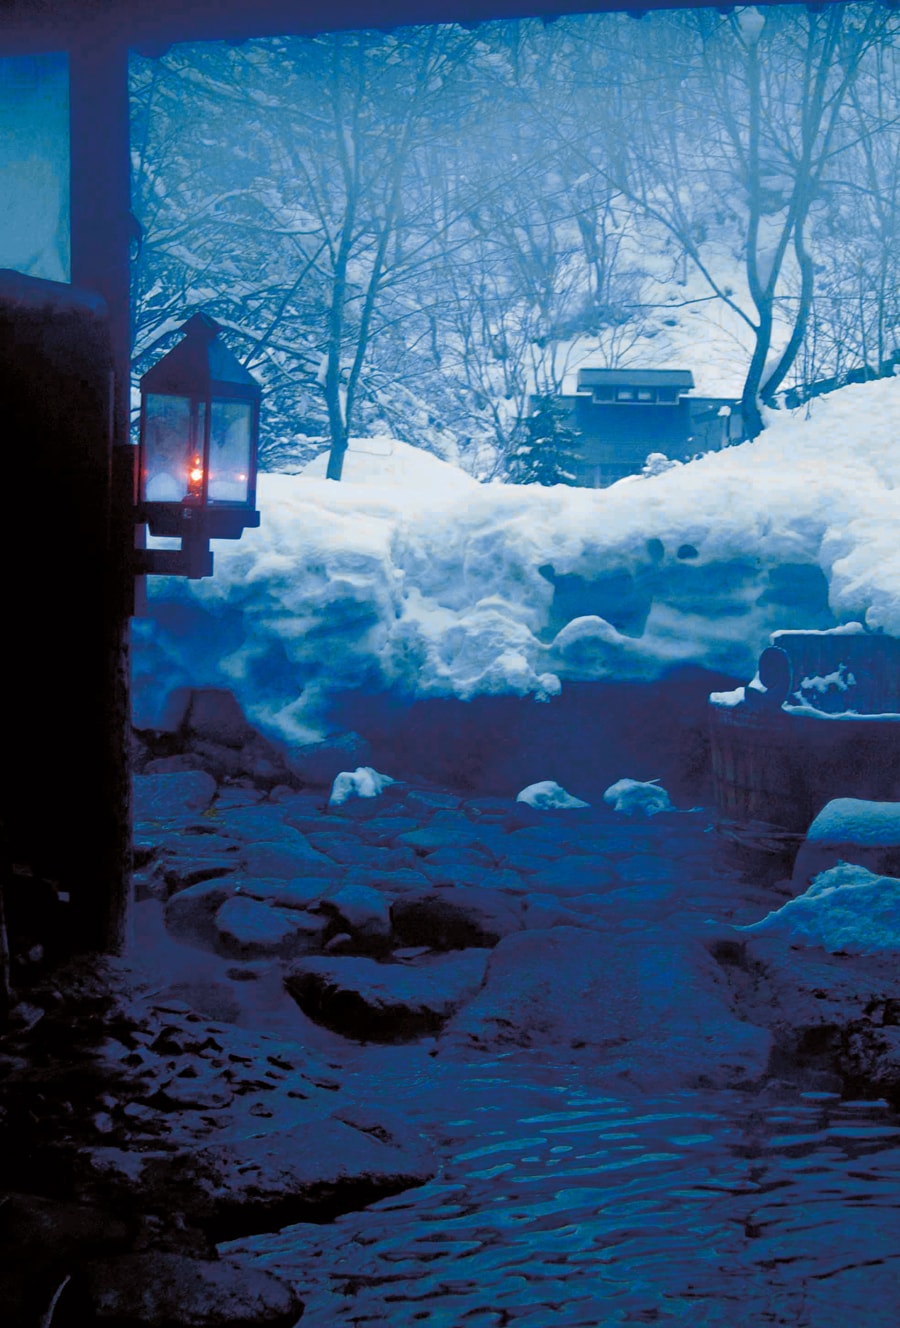 【ランプの宿 青荷温泉】澄んだ空気と雪の白さを満喫できる露天 風呂。